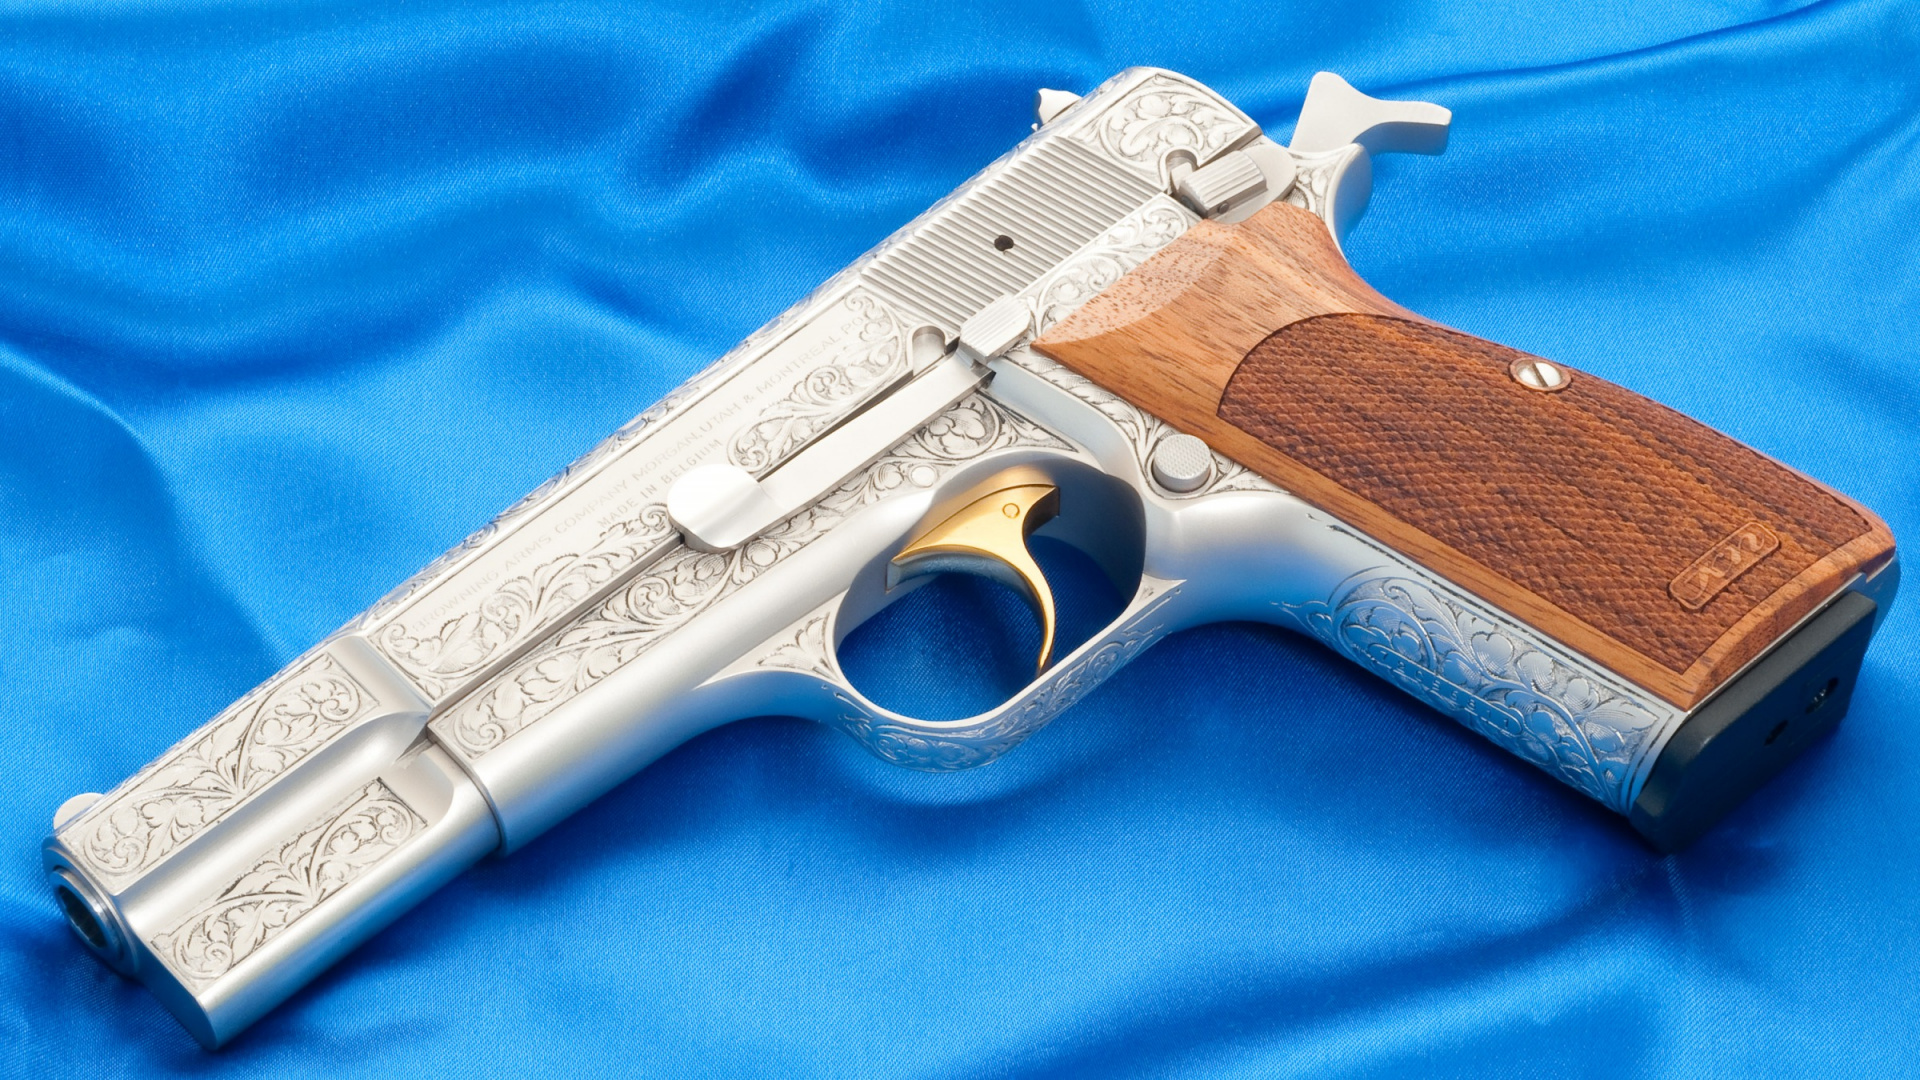 Pistol, M1911 Pistol, Gun, Firearm, Trigger. Wallpaper in 1920x1080 Resolution